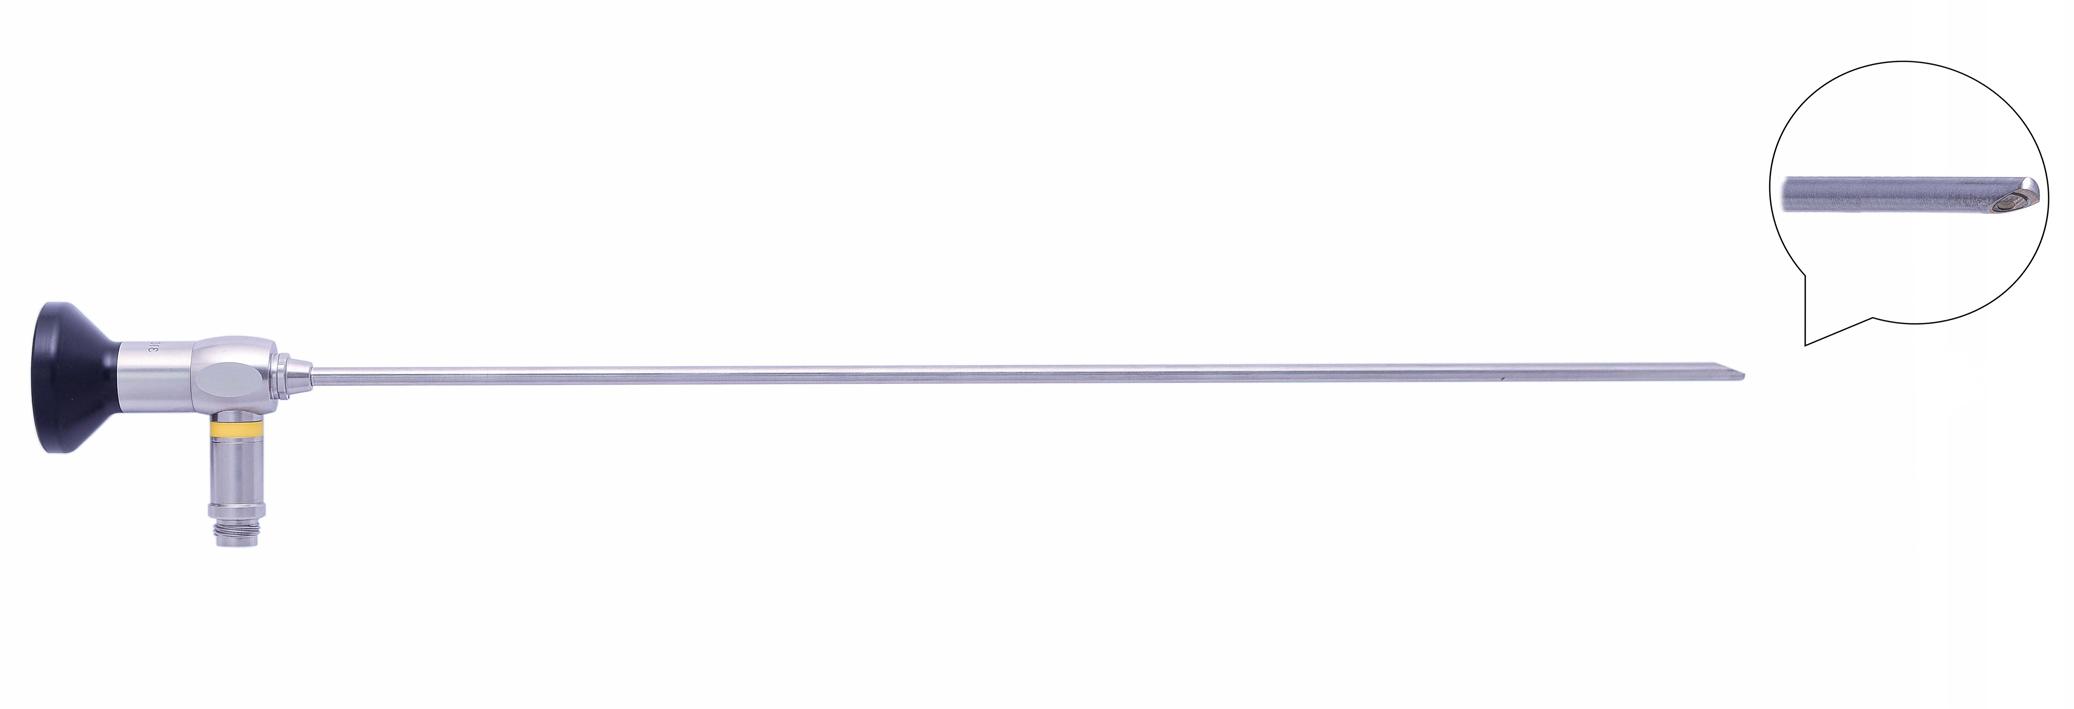 Трубка оптическая (цистоскопическая, гистероскопическая) ТОЦГ-016 диам. 4 мм, с углом наблюдения 70 гр.